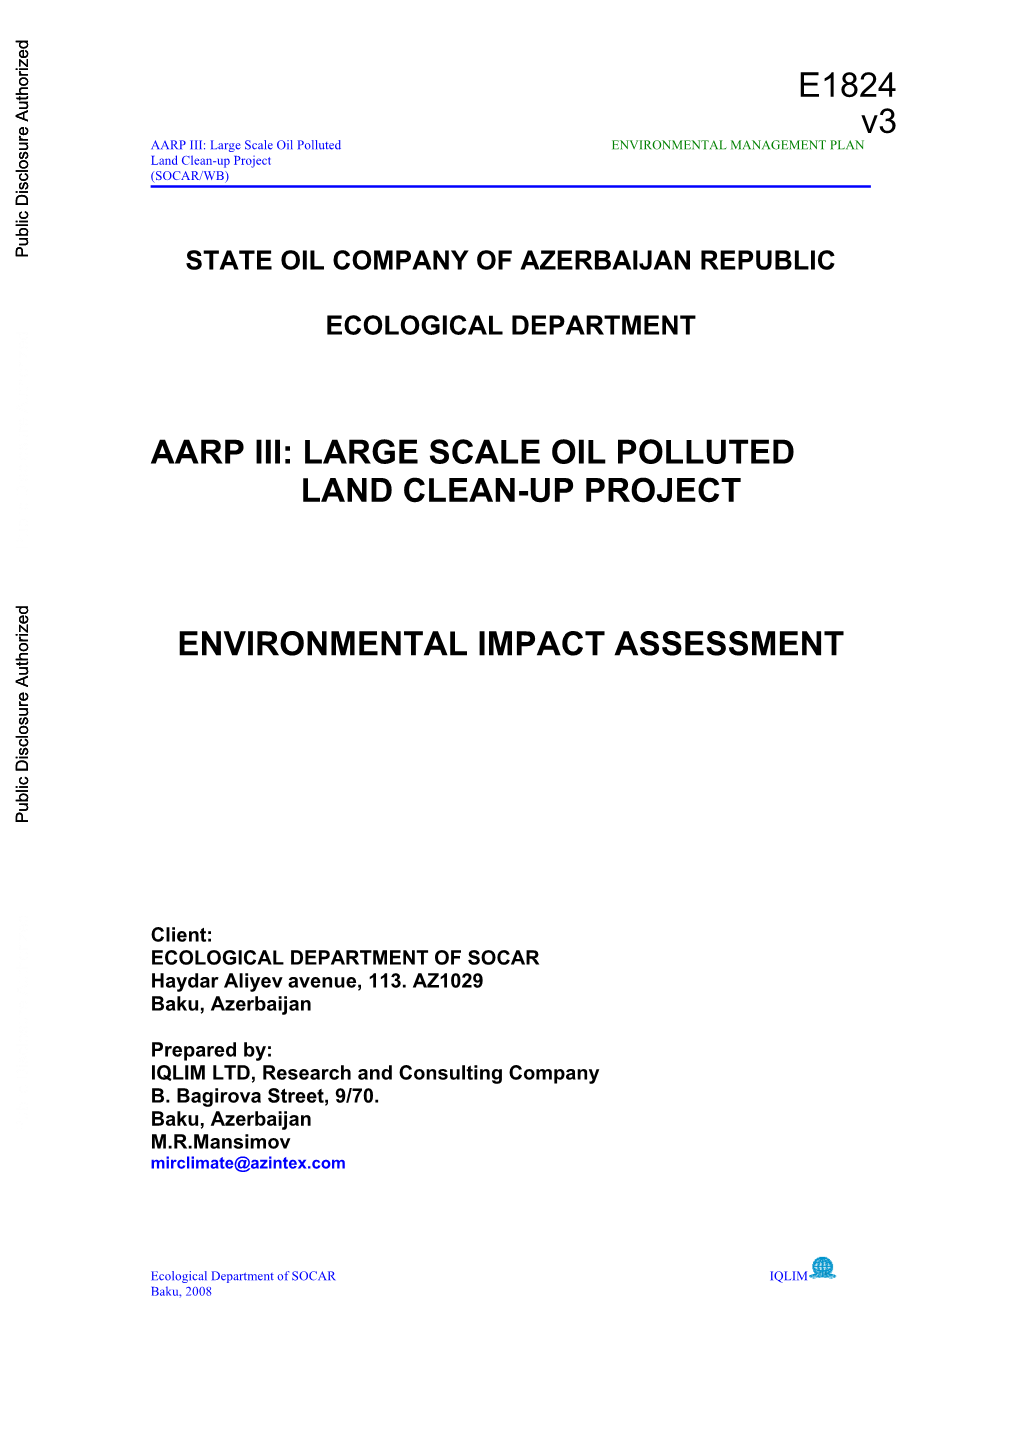 State Oil Company of Azerbaijan Republic